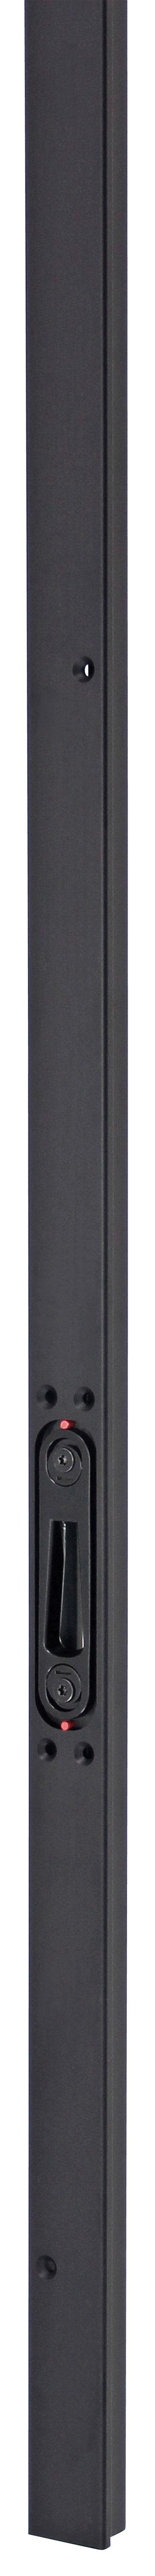 Multipoint Deluxe Inbouw Noir (Serie 004, 006, 51 en 52) | SKG3 Deurnaald | Deurhoogte 2300-3200 mm